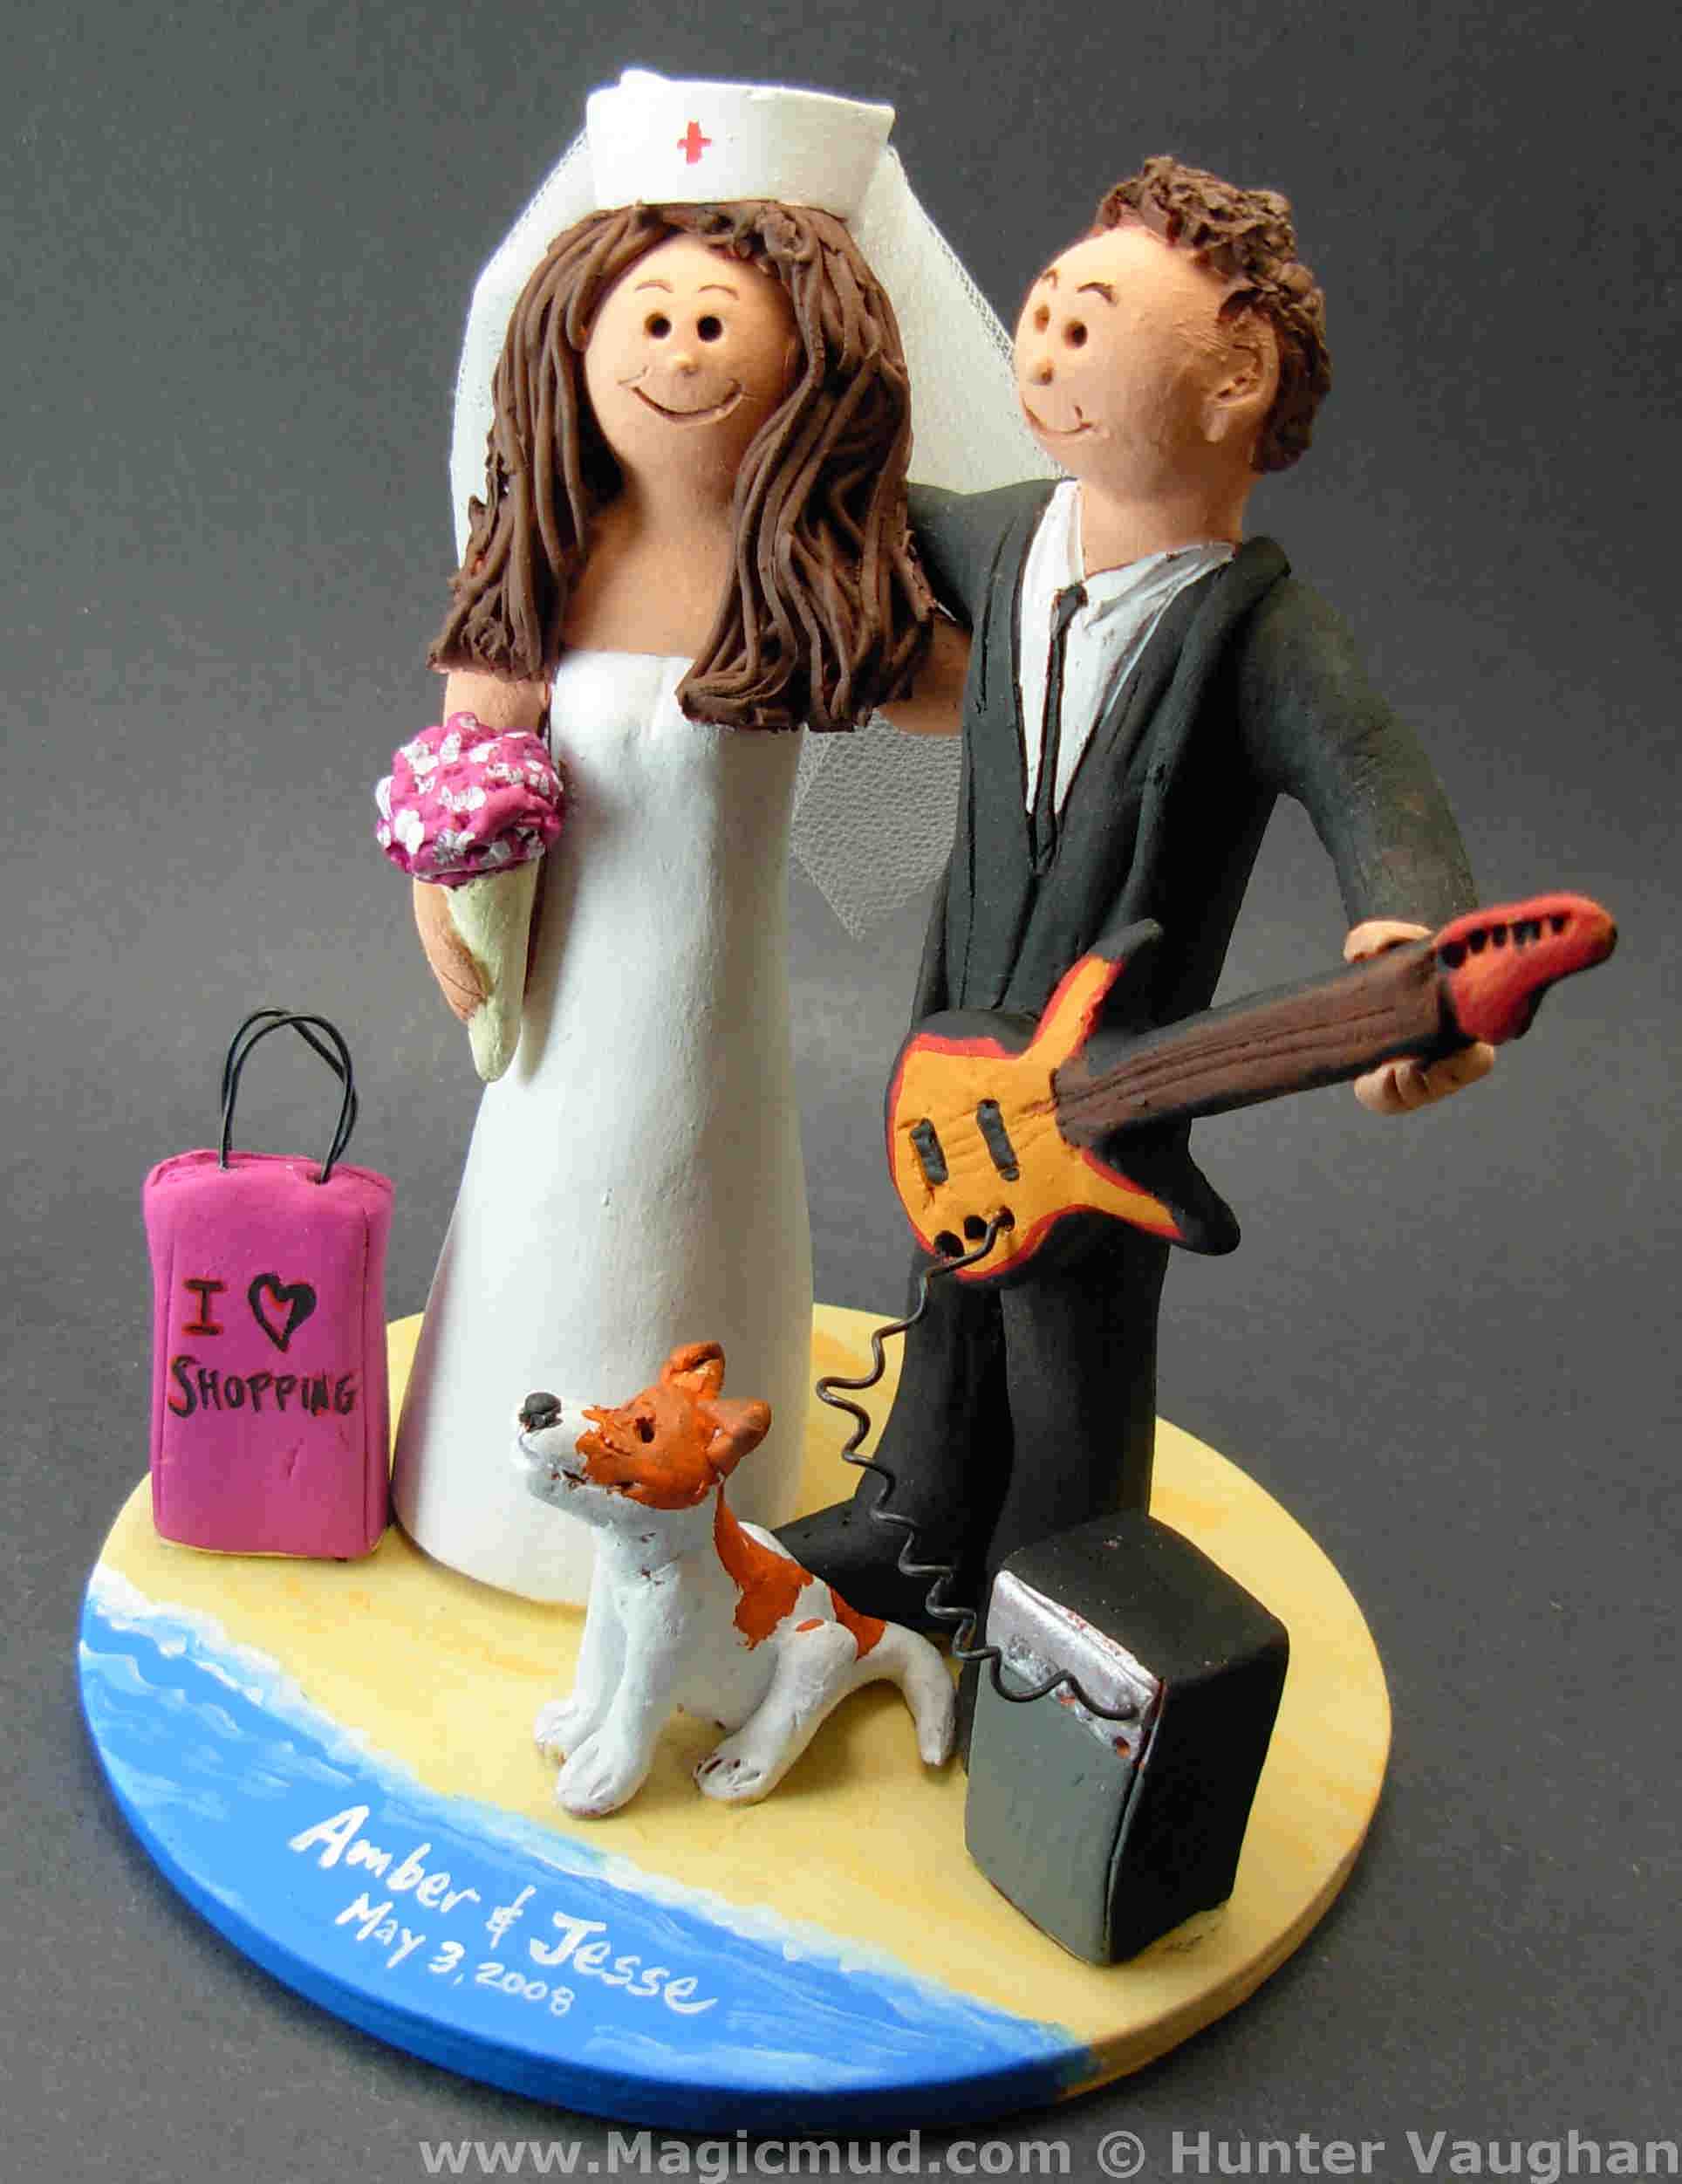 I Love Shopping Wedding Cake Topper